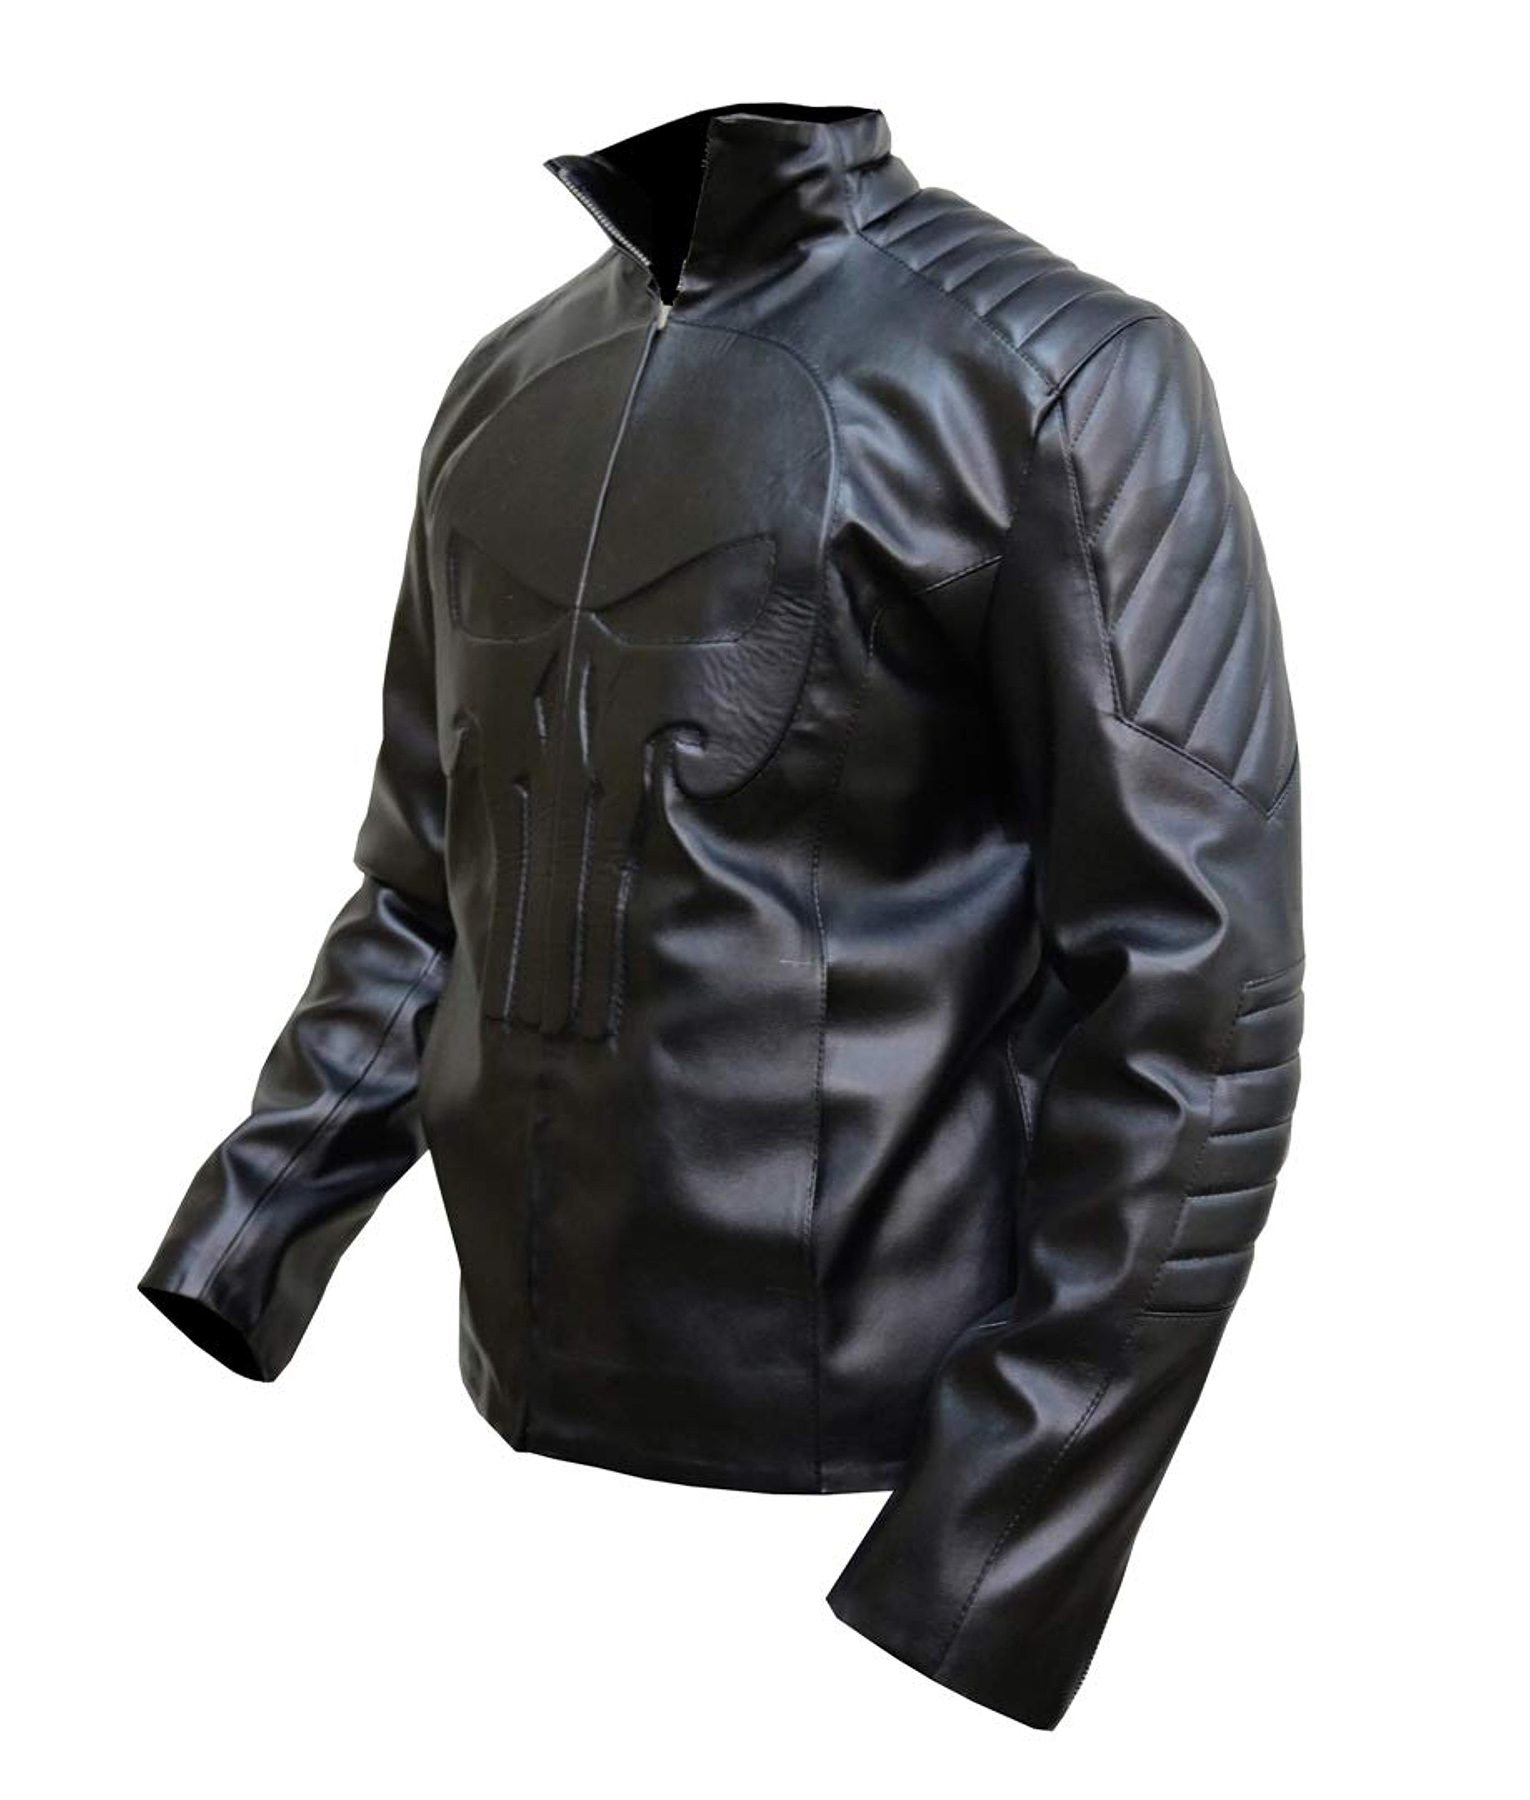 Thomas Jane Black Skull Leather Jacket (2)